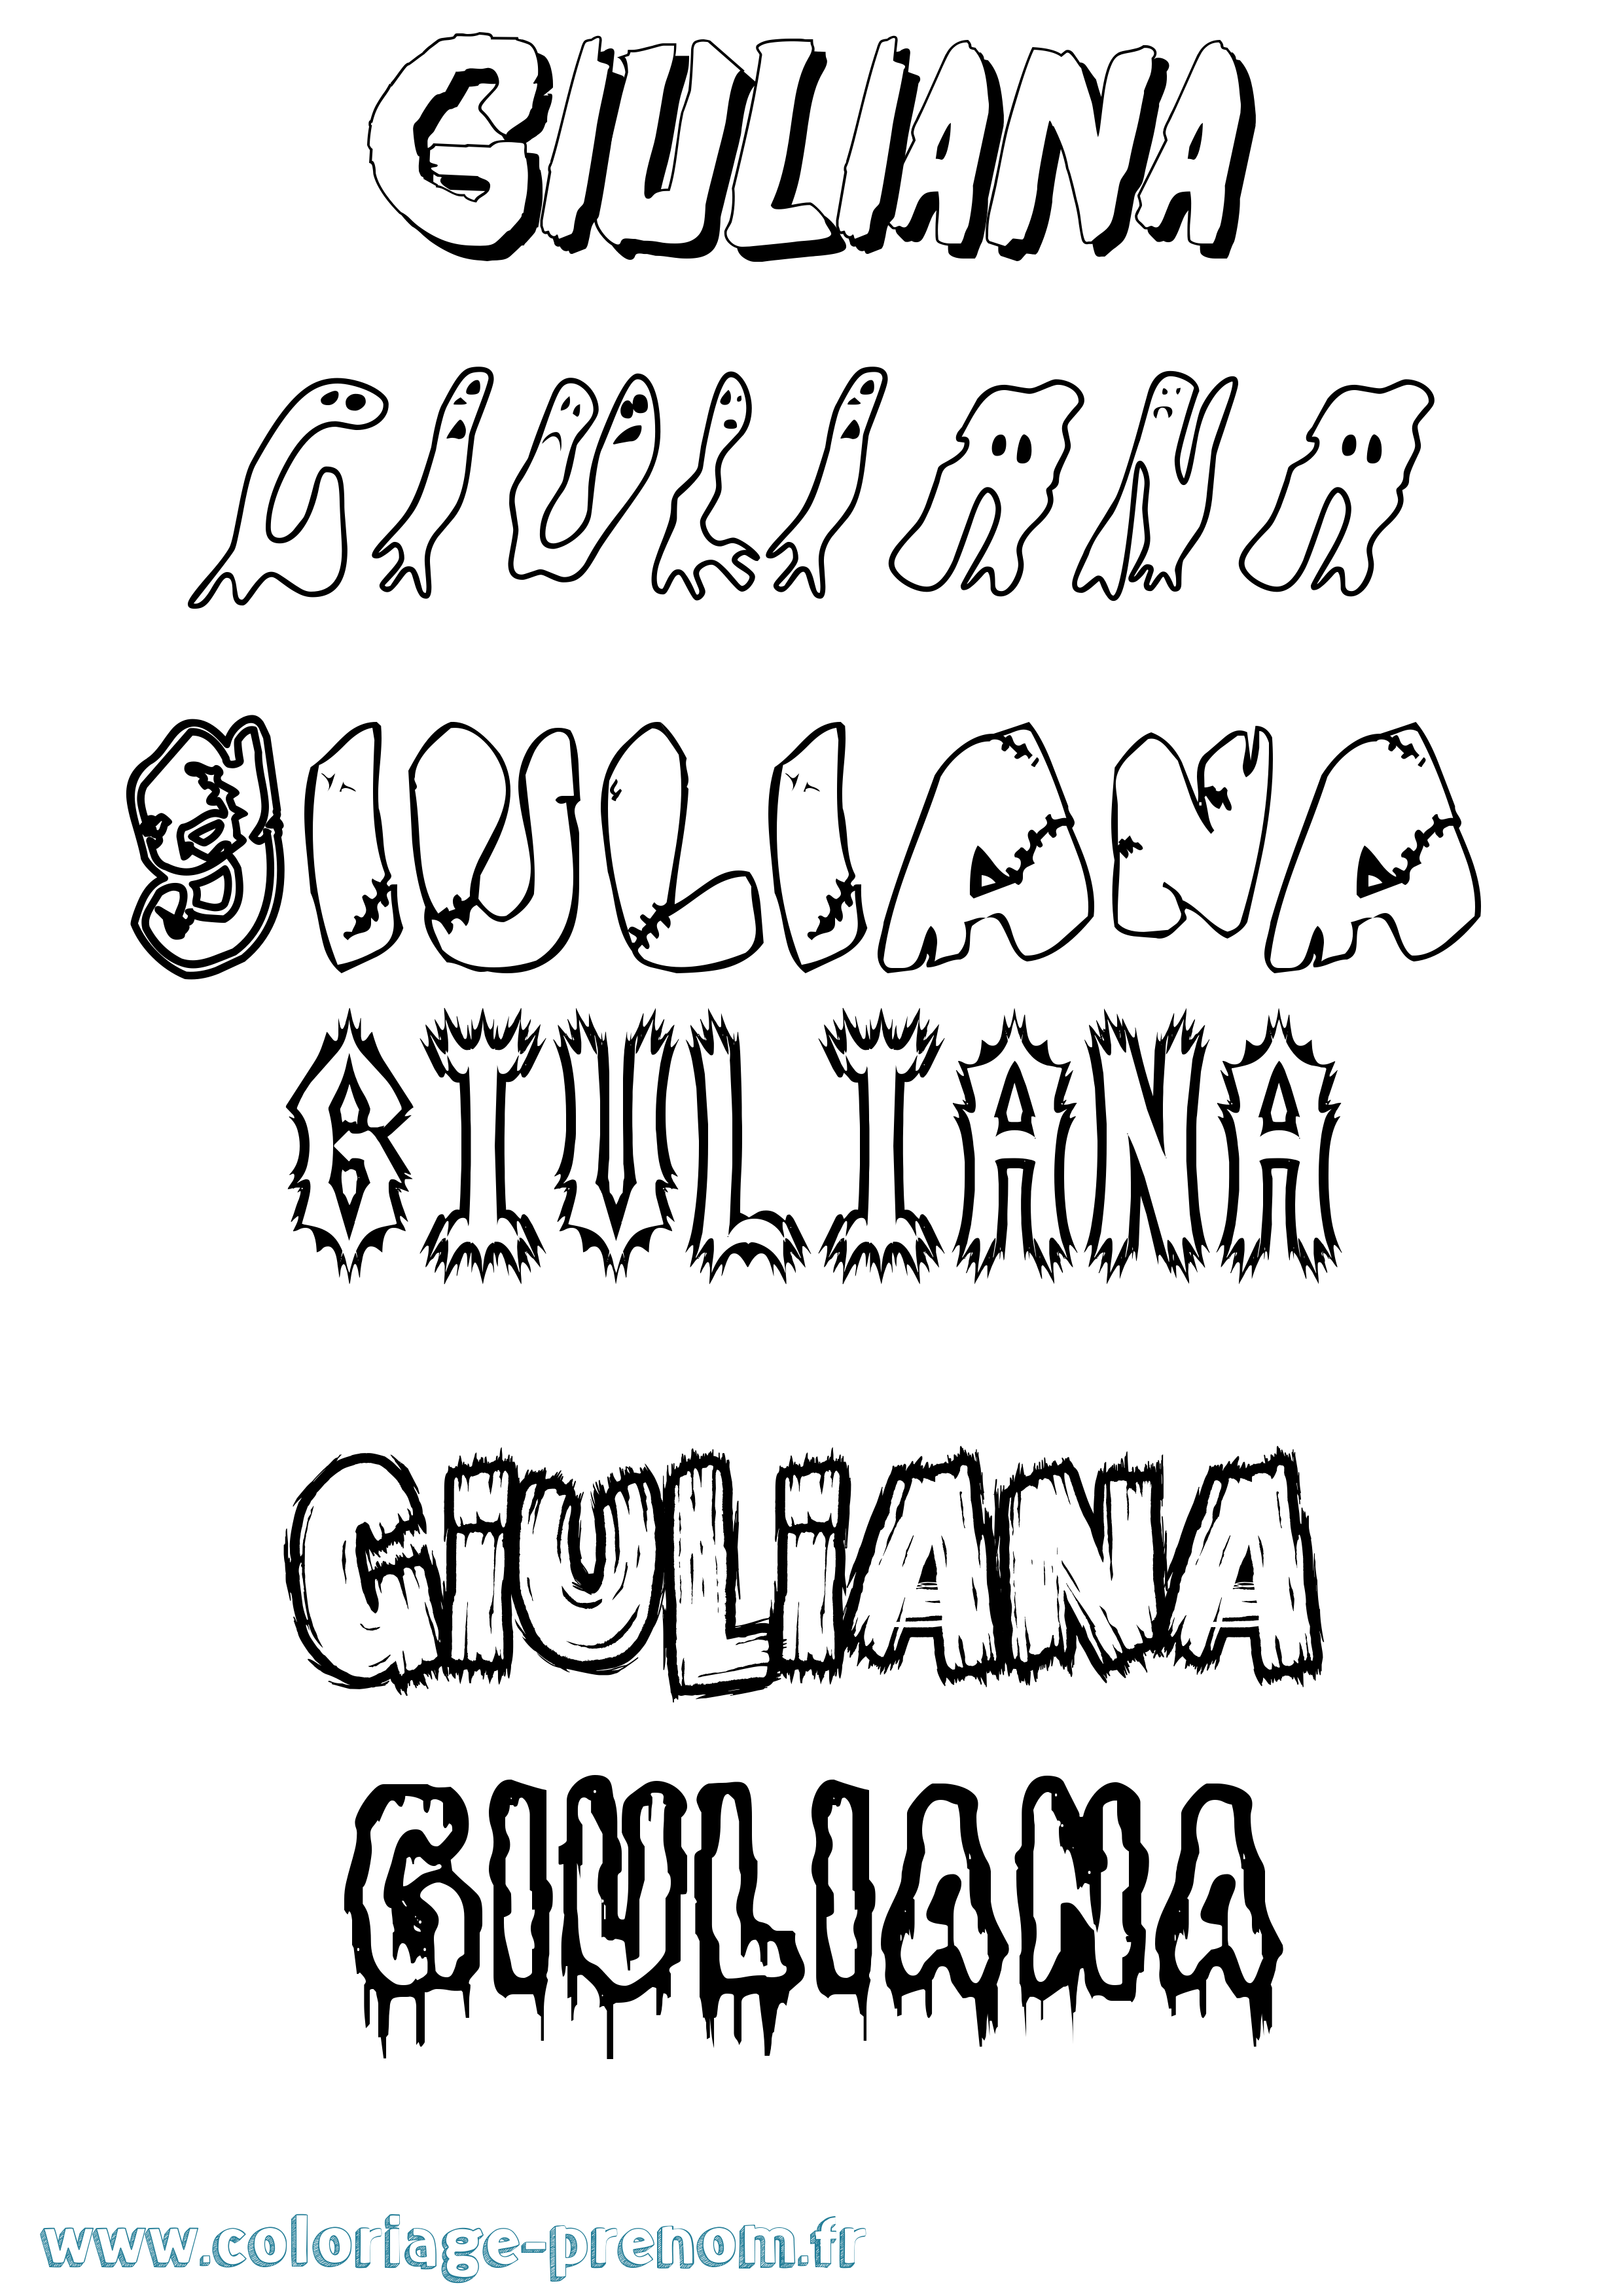 Coloriage prénom Giuliana Frisson